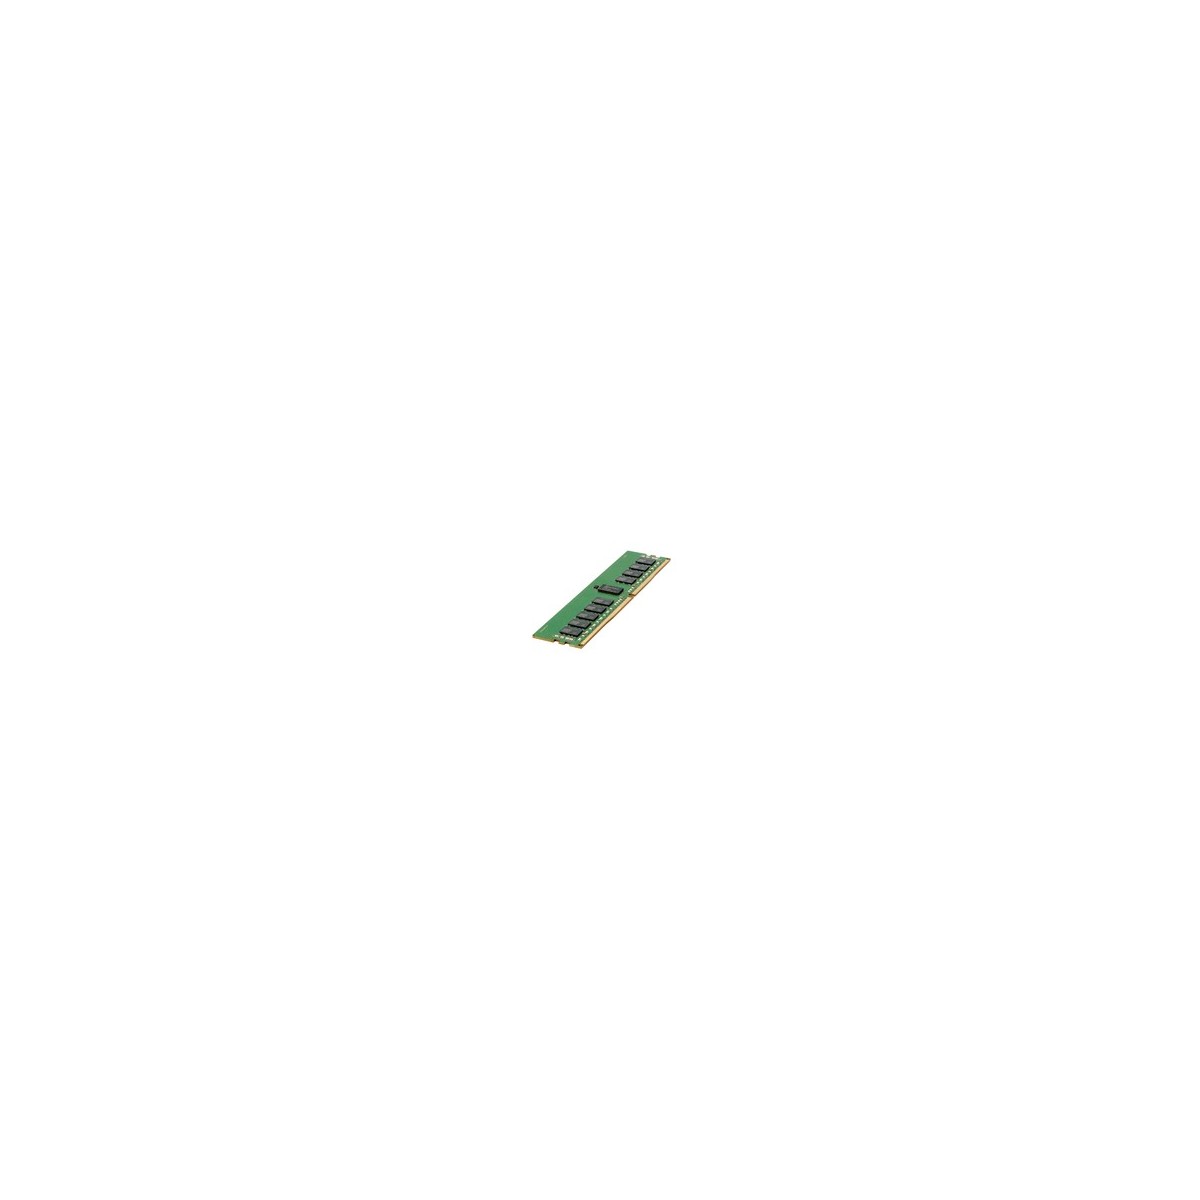 HPE 16GB DDR4-2400 - 16 GB - 1 x 16 GB - DDR4 - 2400 MHz - 288-pin DIMM - Green